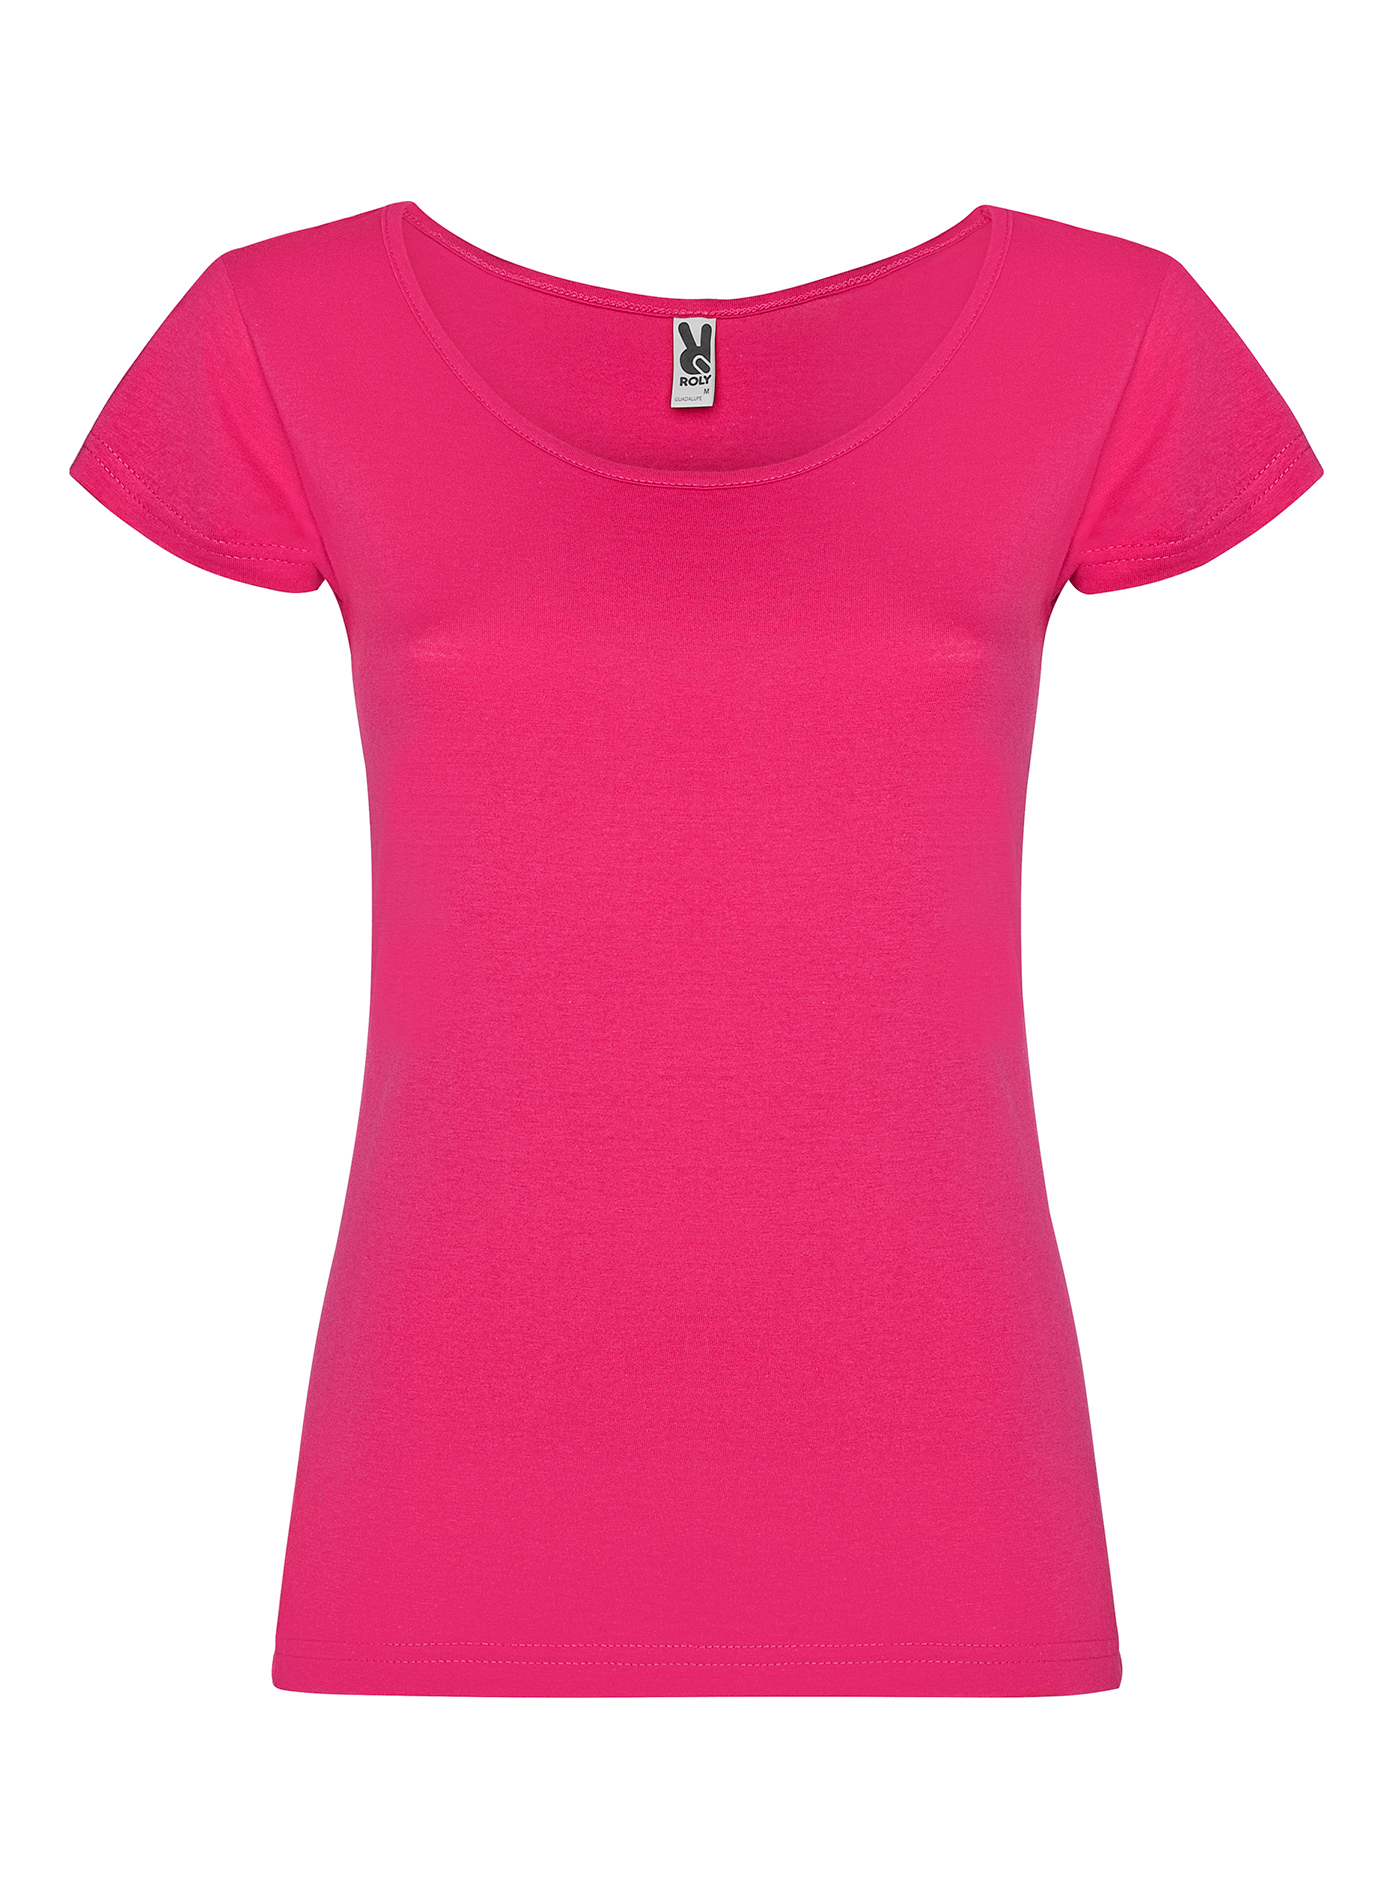 Dámské tričko Roly Guadalupe - Sytě růžová L